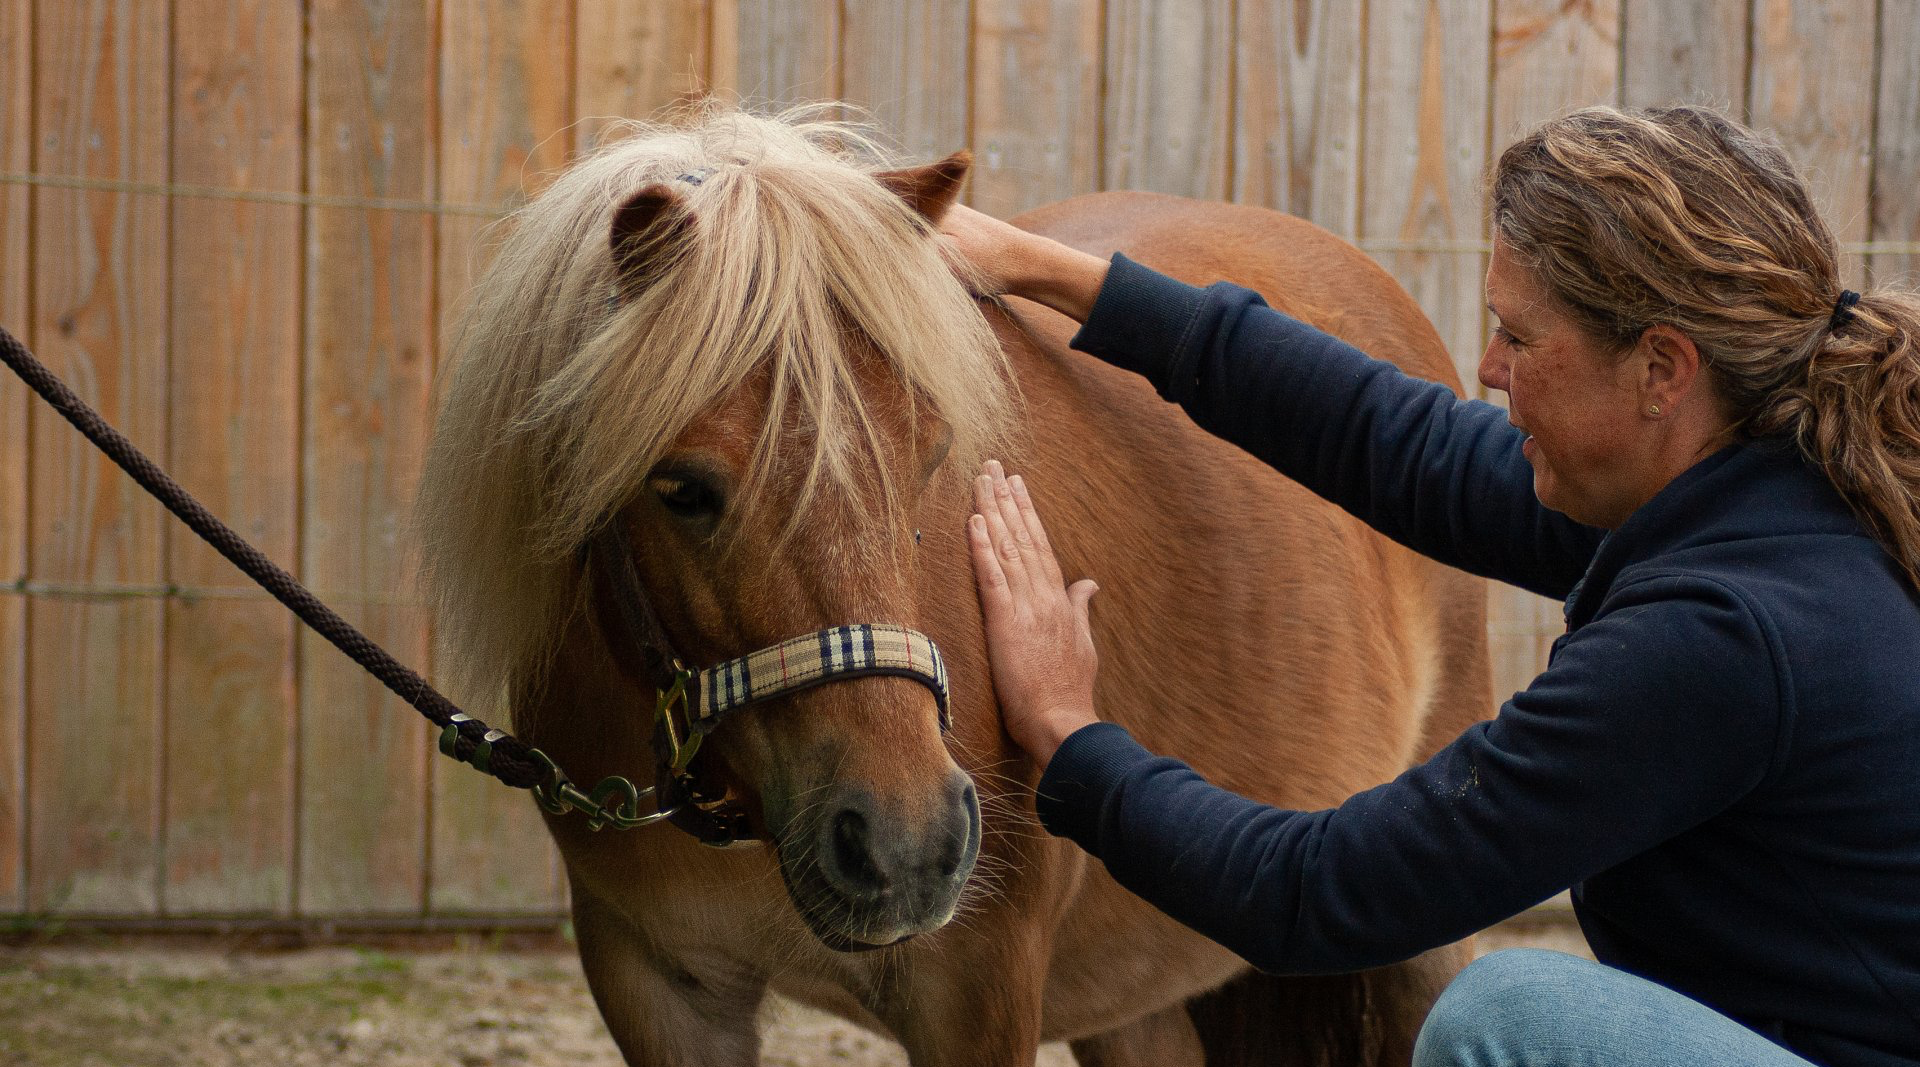 Miranda van purely horse massage uit Drouwenerveen, Drenthe, geeft voskleurige Shetlander een manuele lymfedrainage behandeling